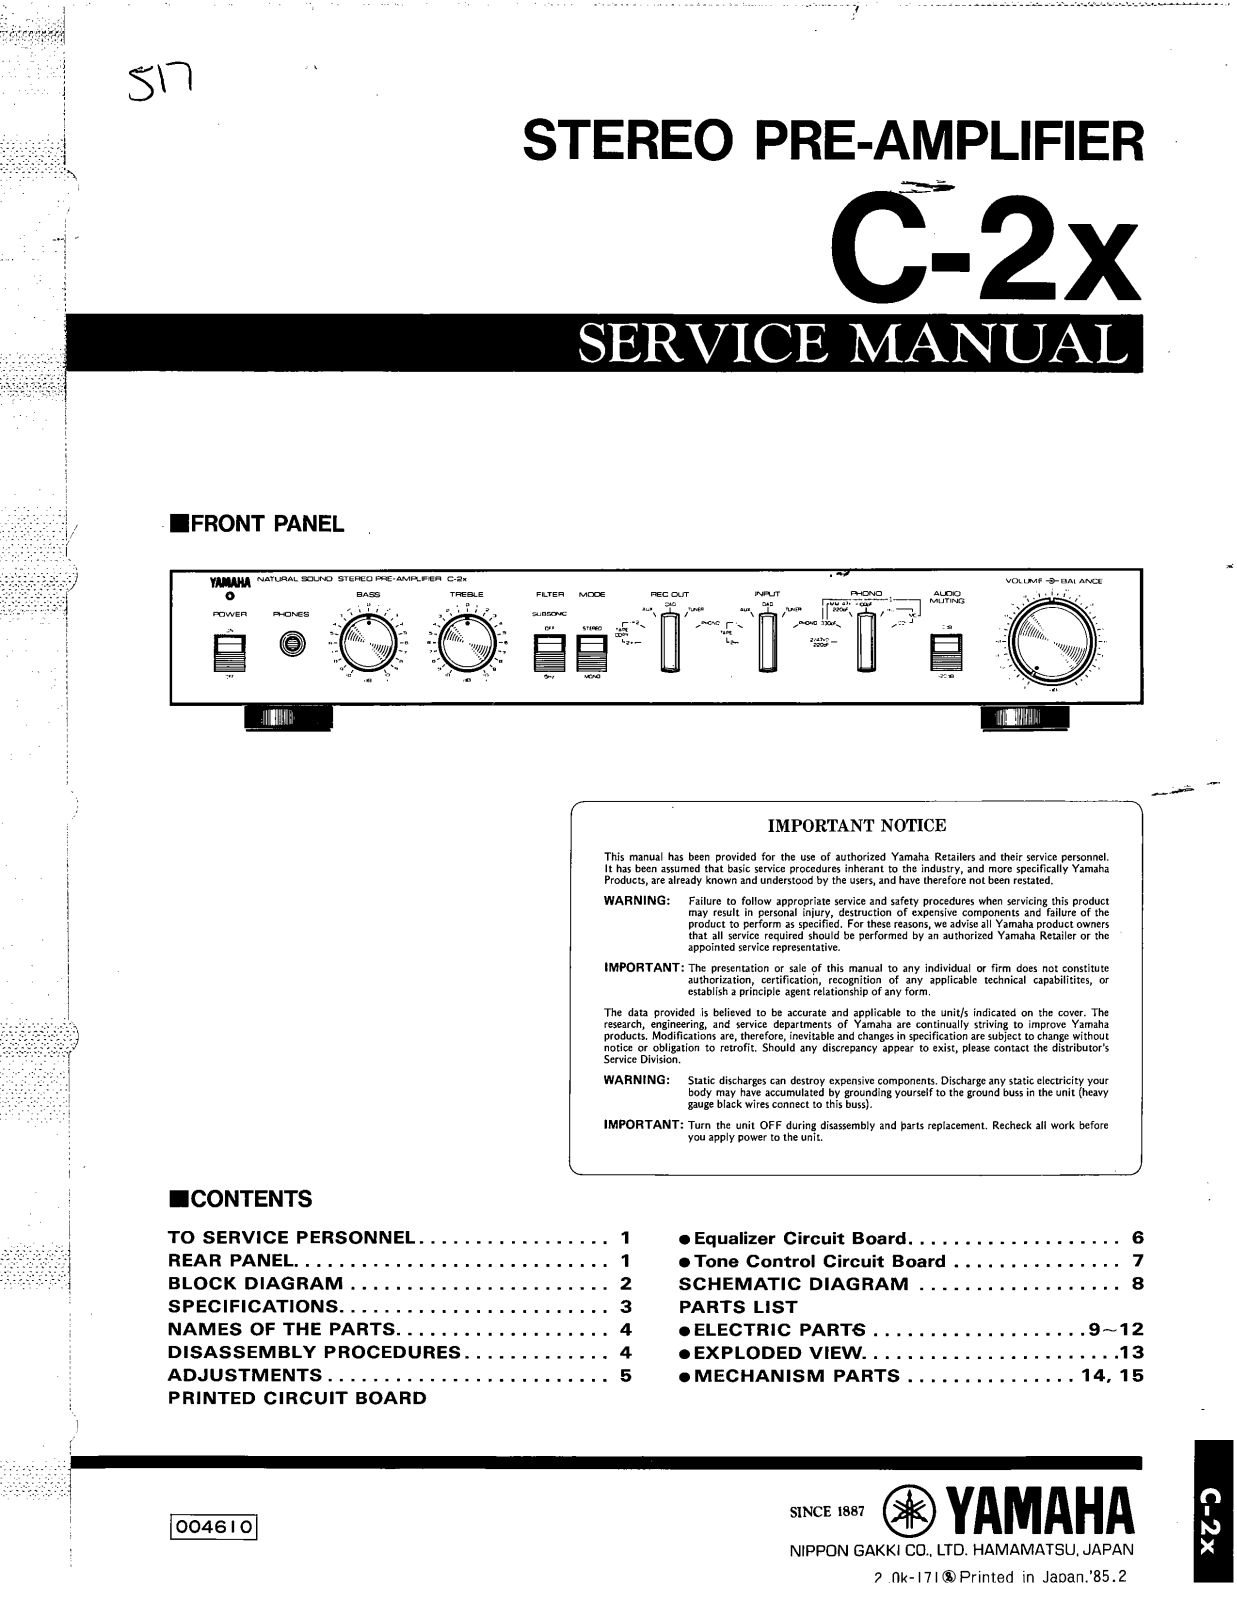 Yamaha C-2-X Service Manual